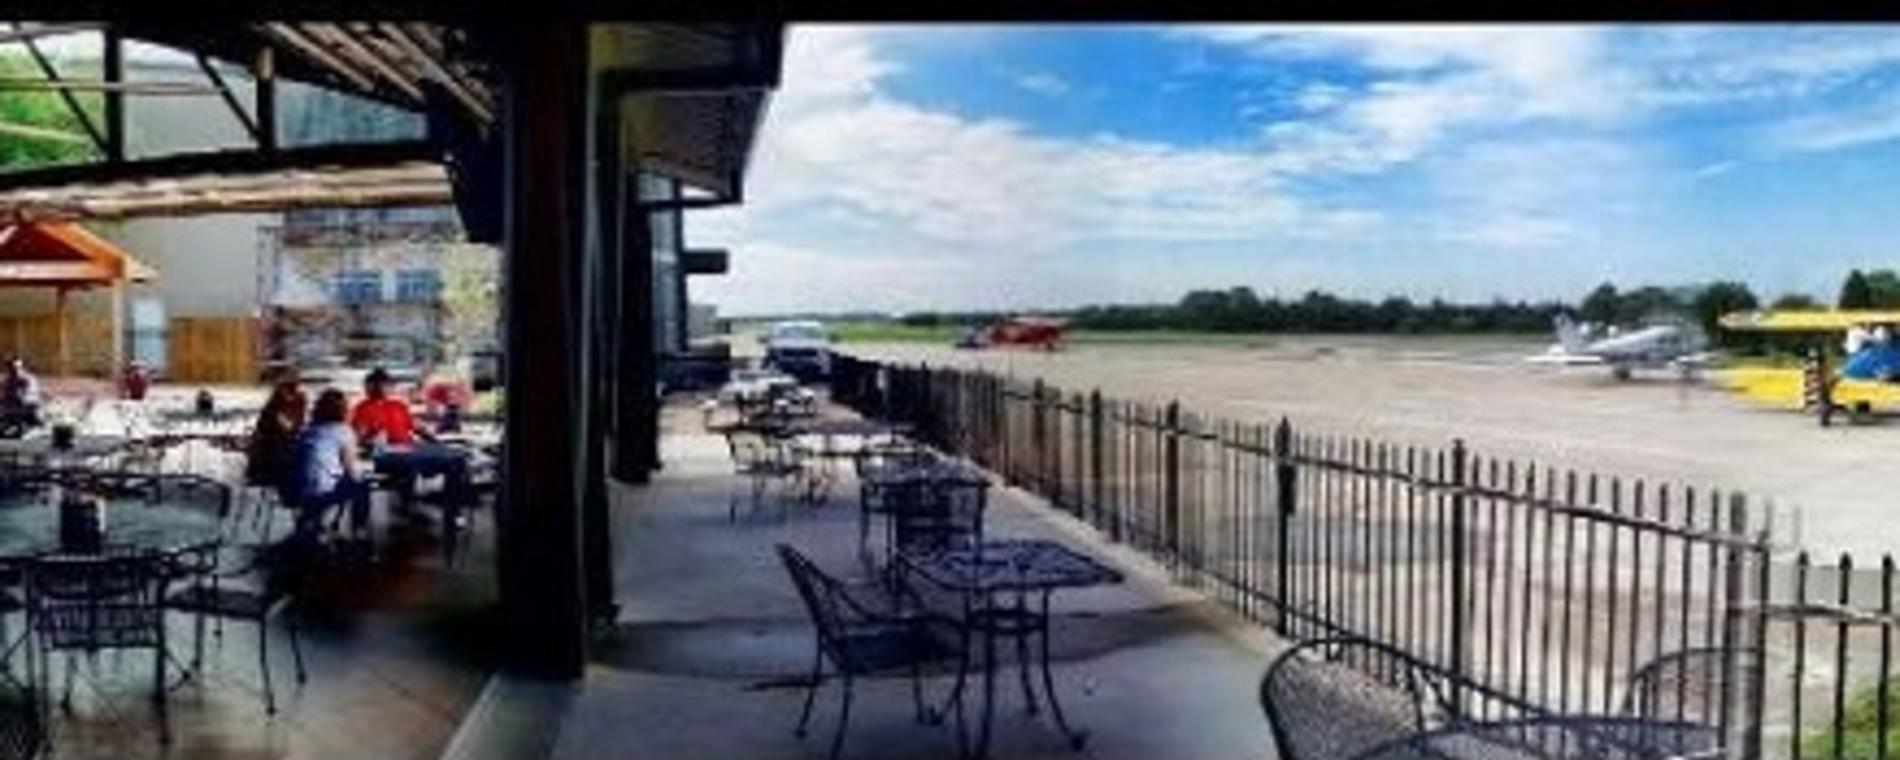 Stearman Bar/Grill Patio & Plane Visit Wichita